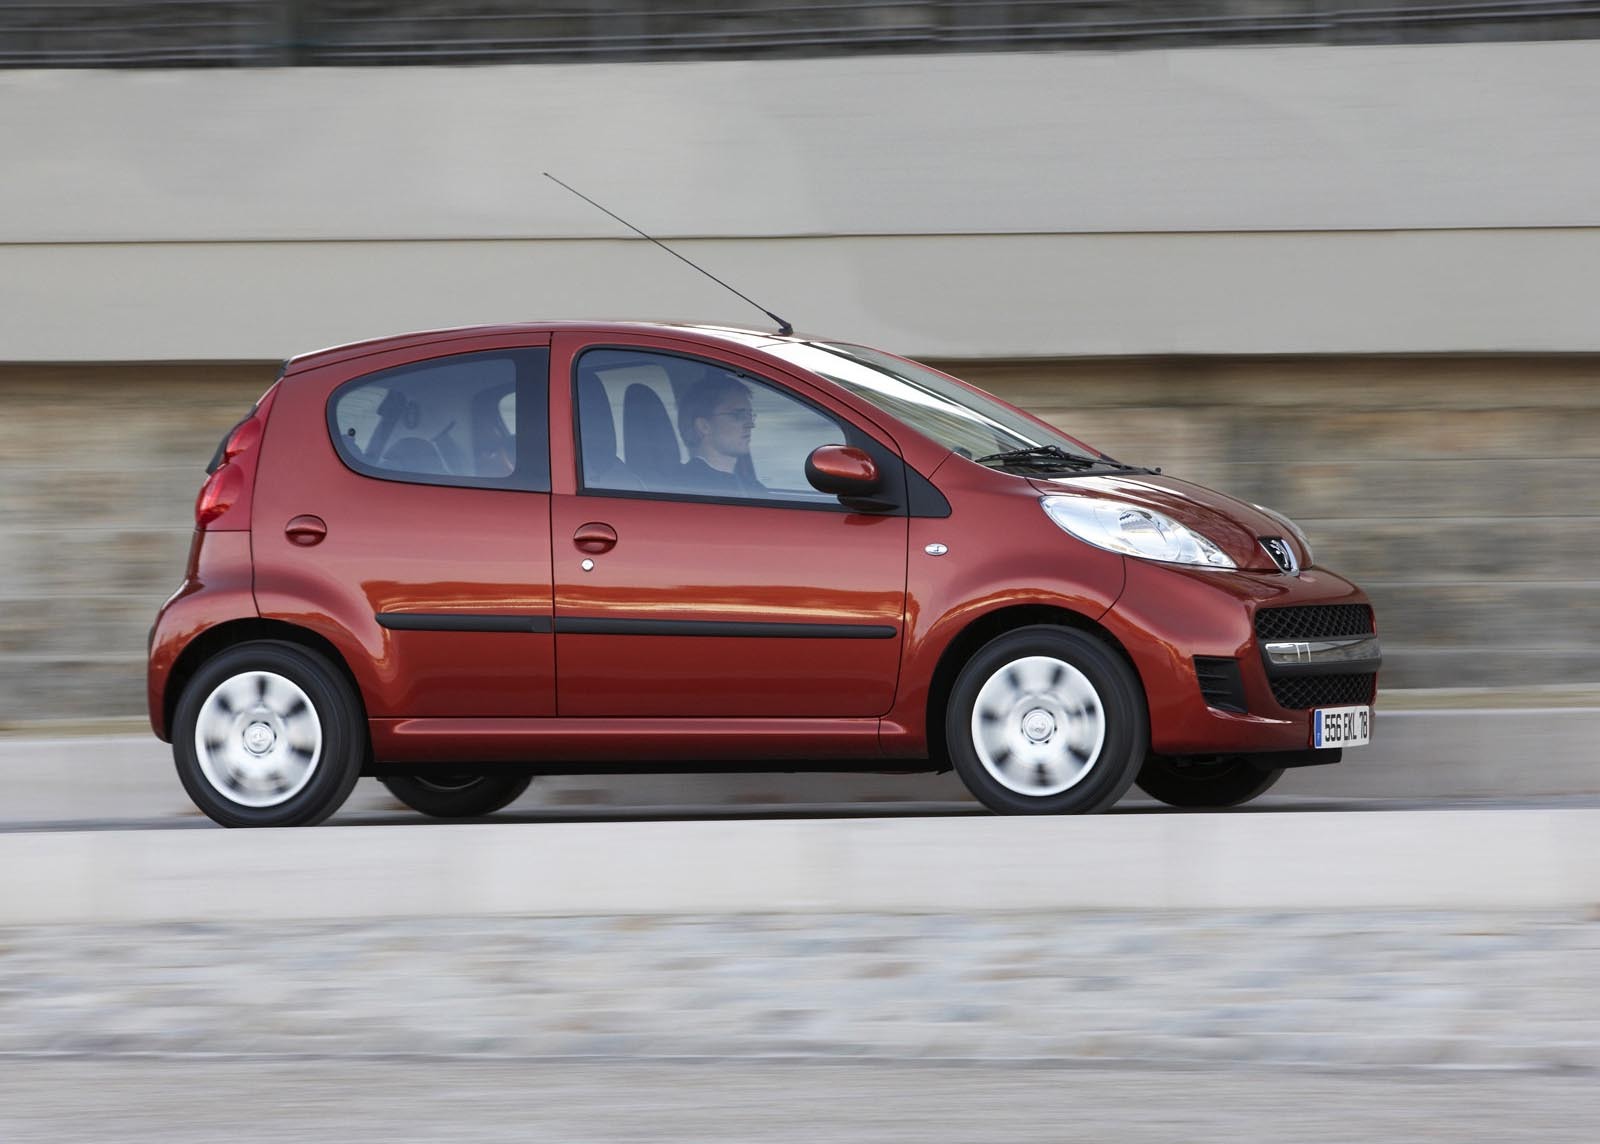 Cea mai ieftina masina automata pe piata noastra este Peugeot 107: 1.0 E BVMP TWO, de la 9.253 euro